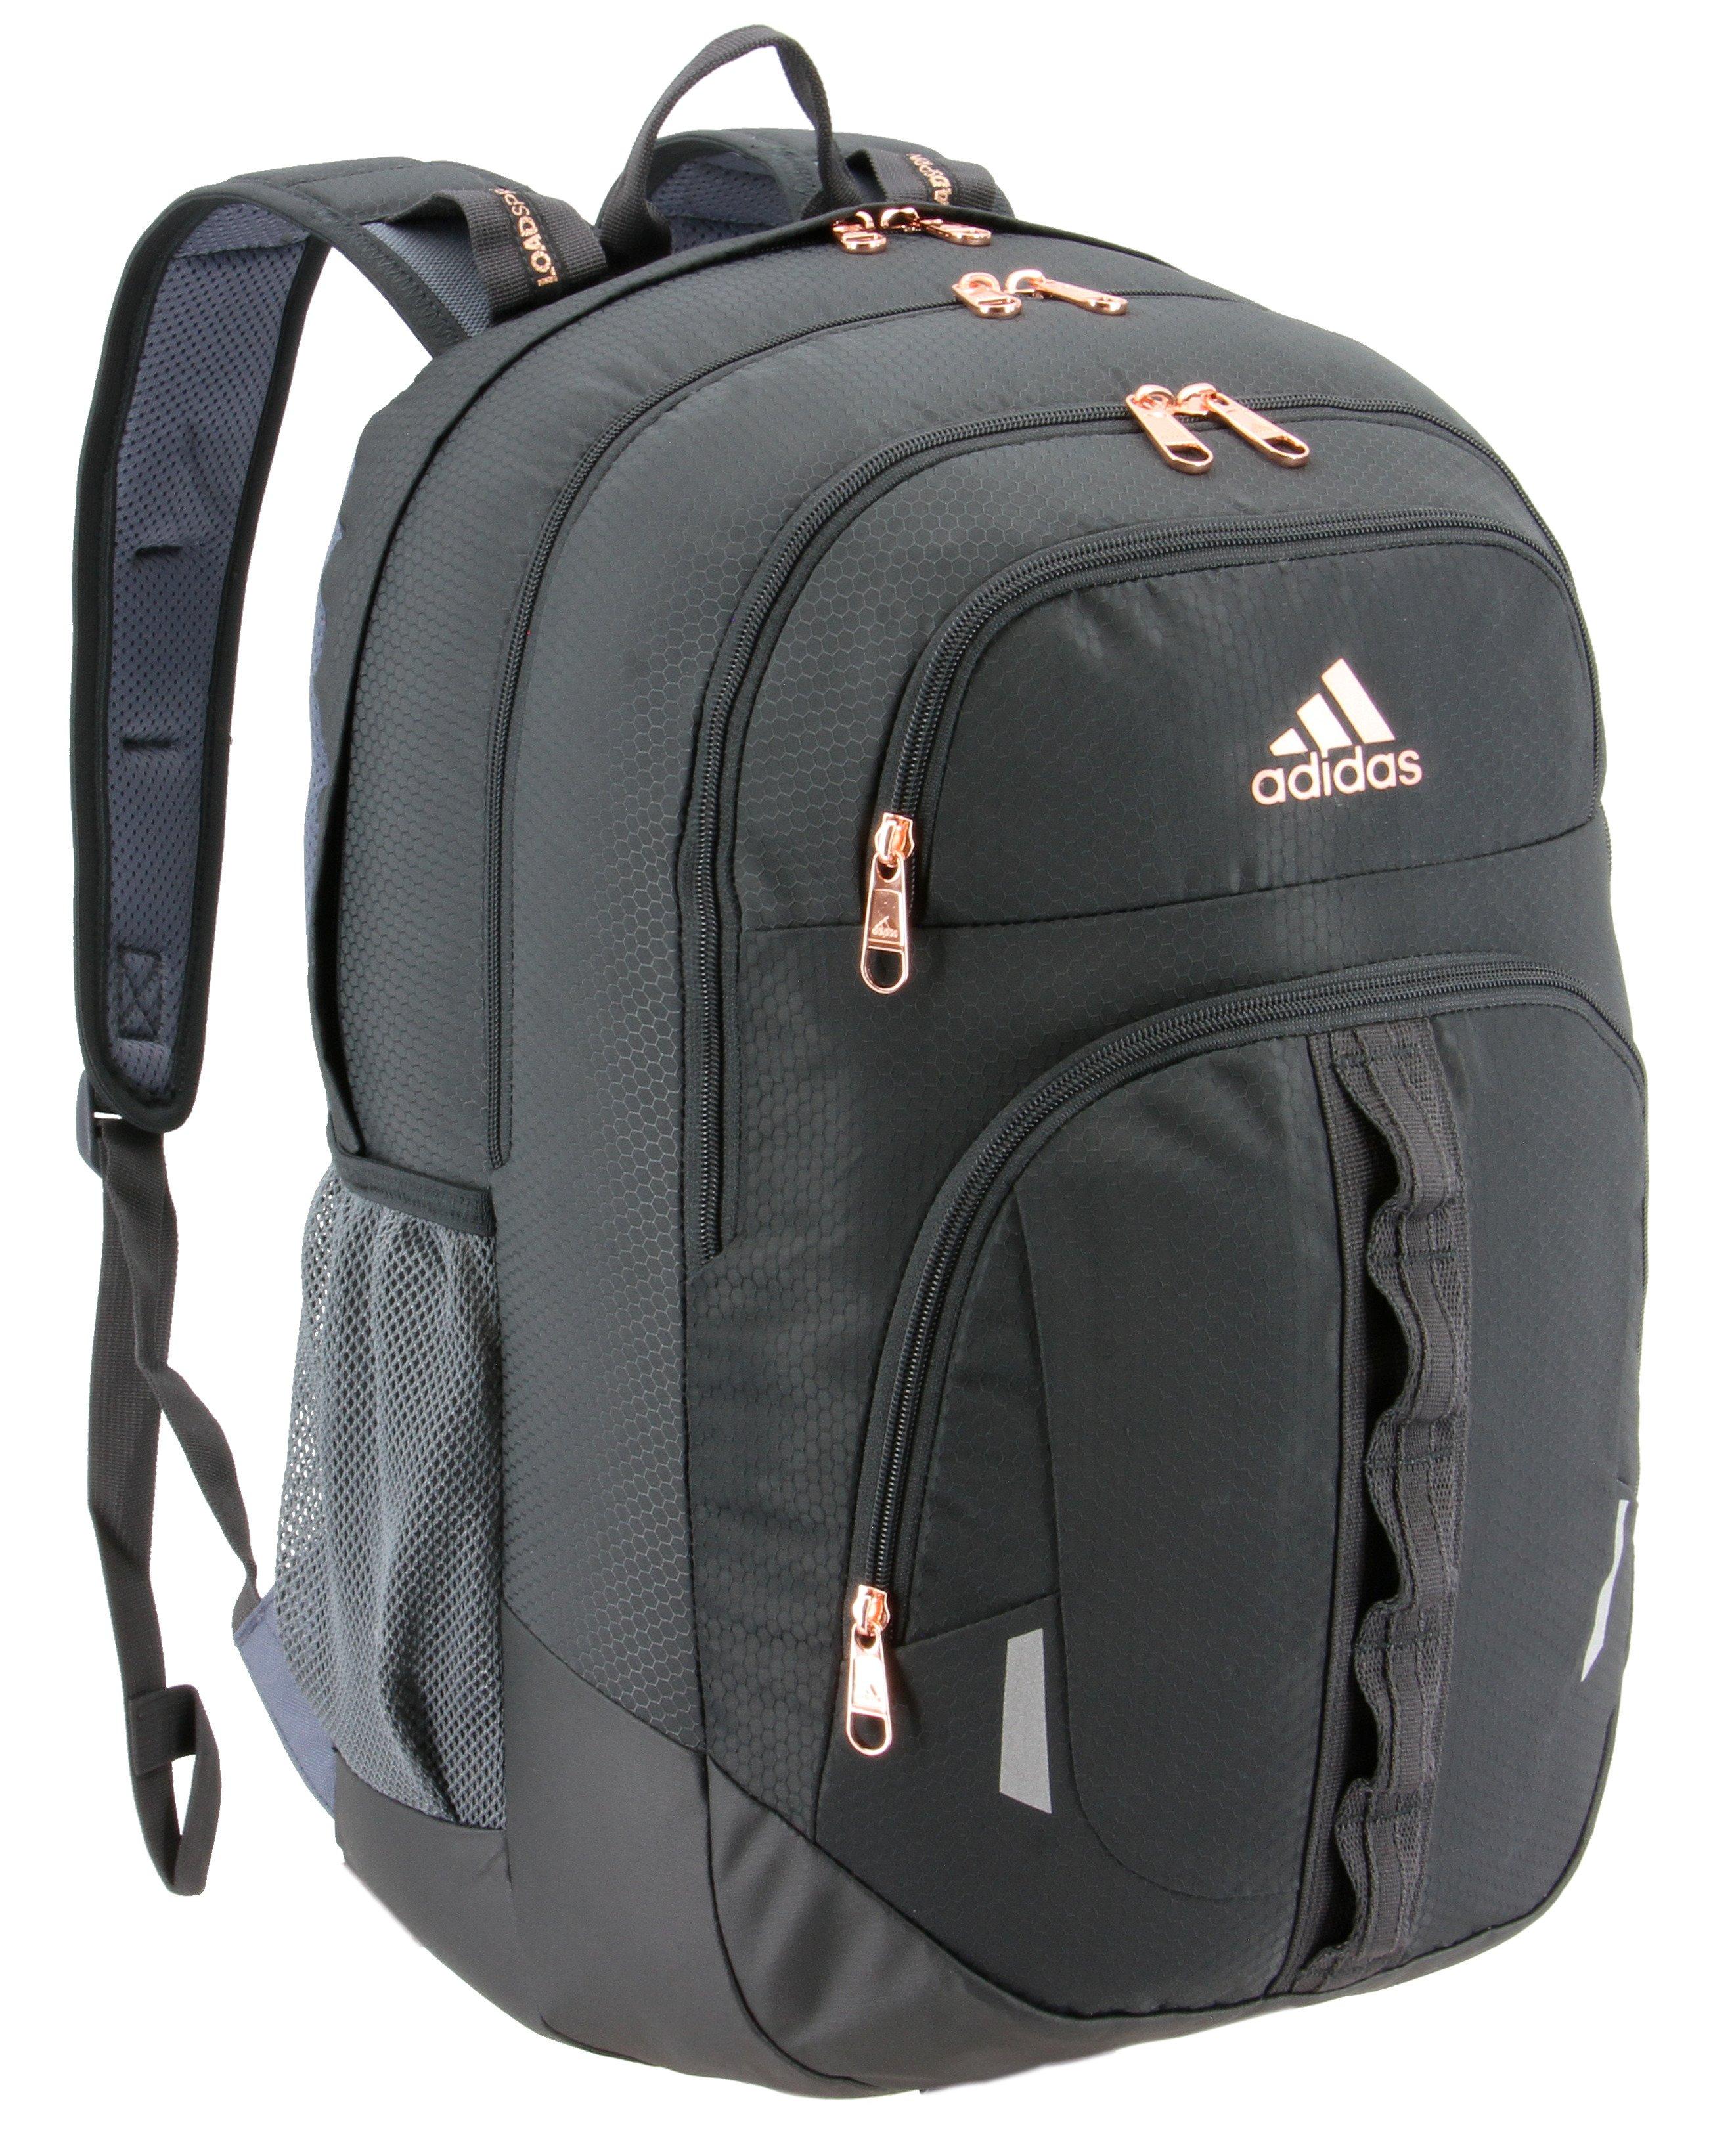 prime v adidas backpack